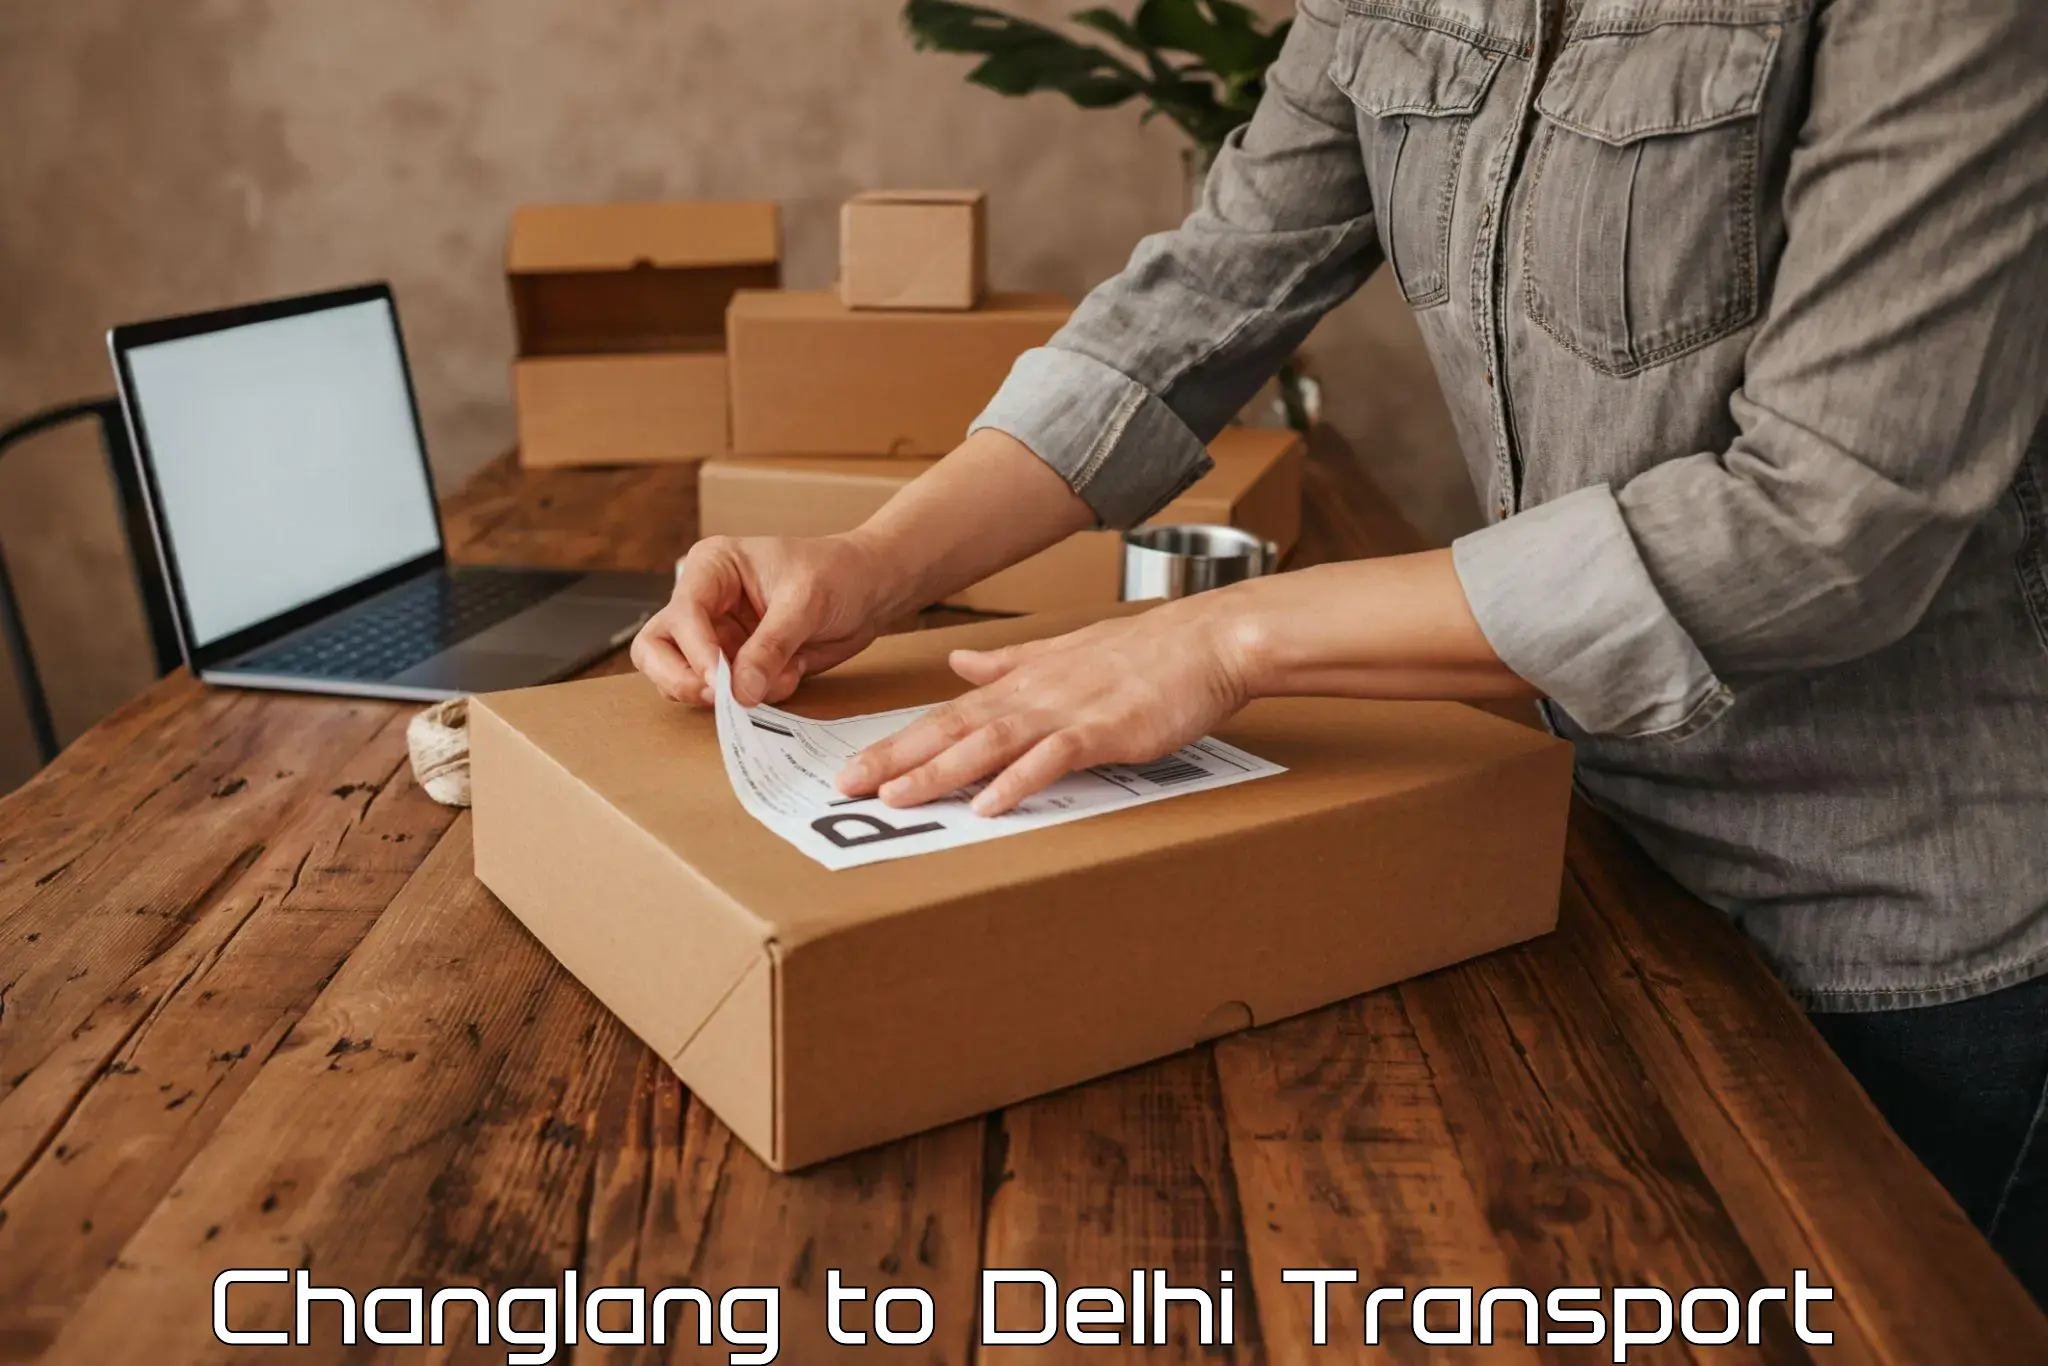 Online transport Changlang to Jamia Hamdard New Delhi